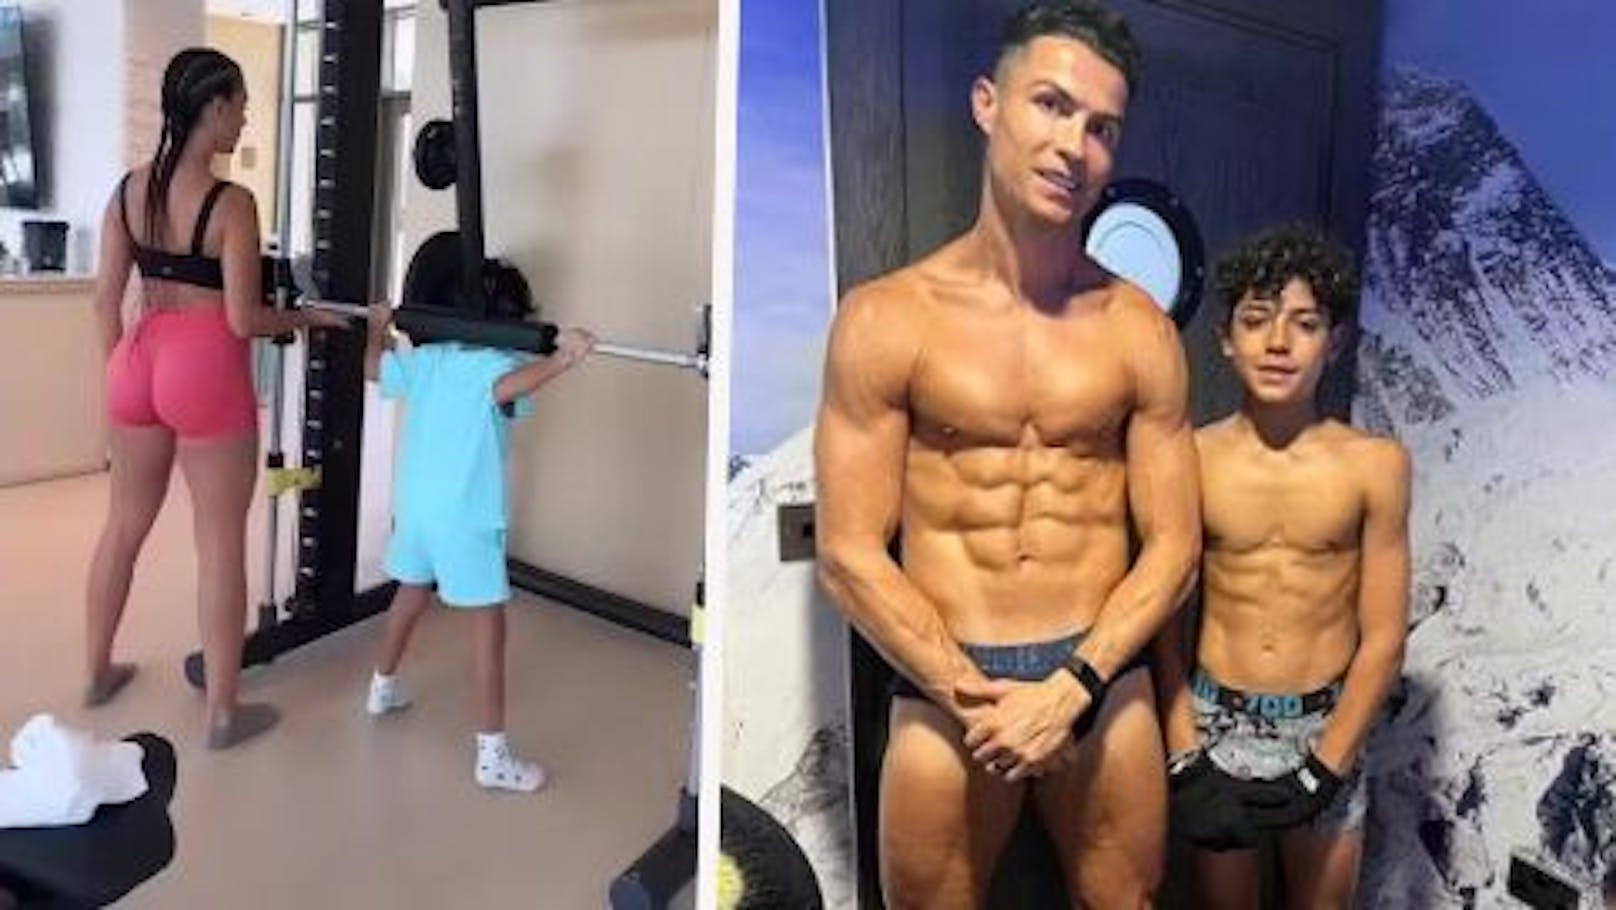 Ronaldo-Zwillinge (6) in Kraftkammer – das sagt Ärztin